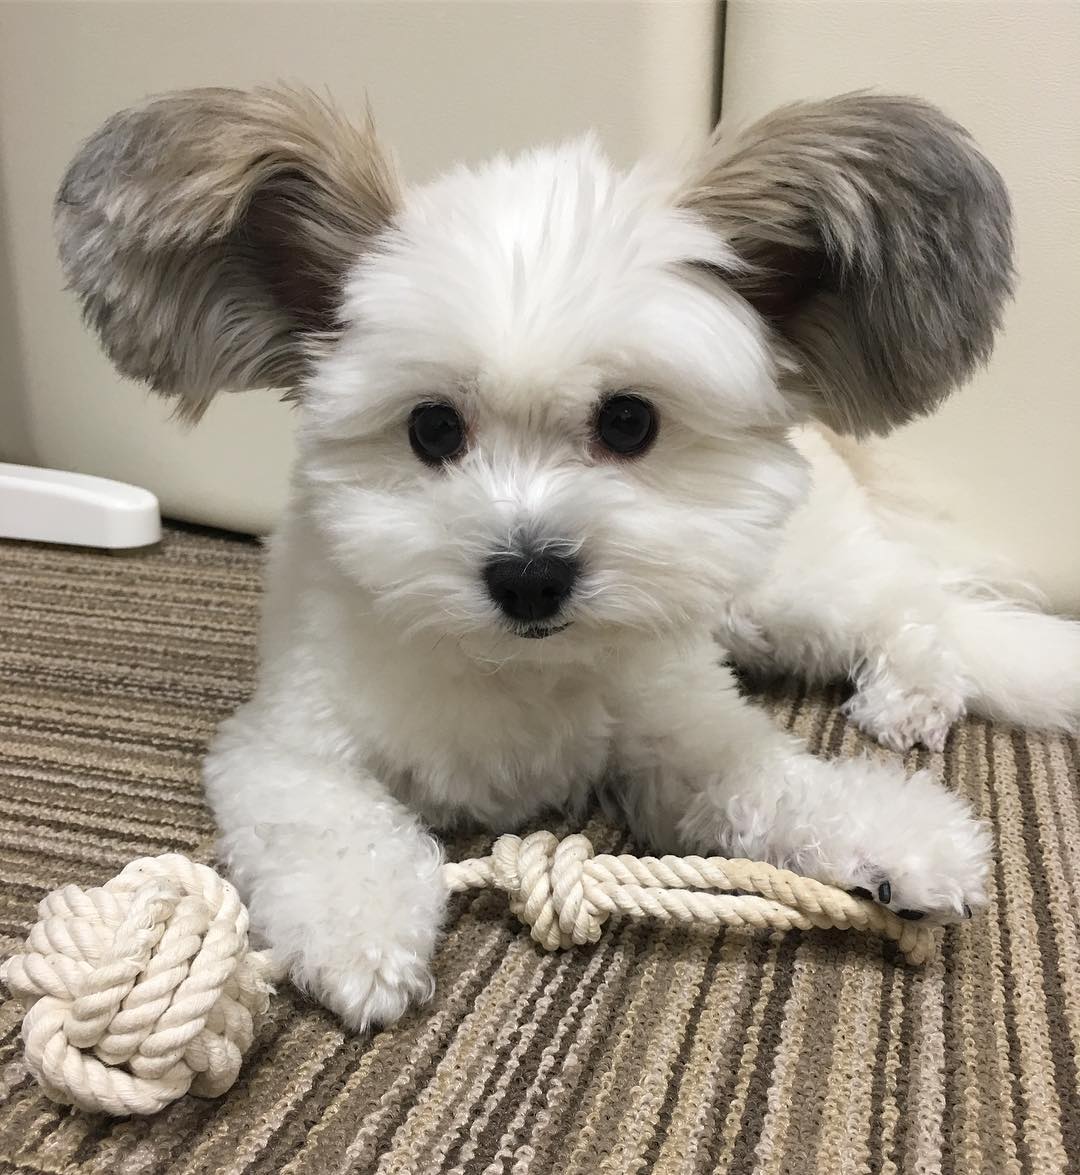 Безумно милый щенок с ушами, как у Микки Мауса стал новой звездой соцсетей